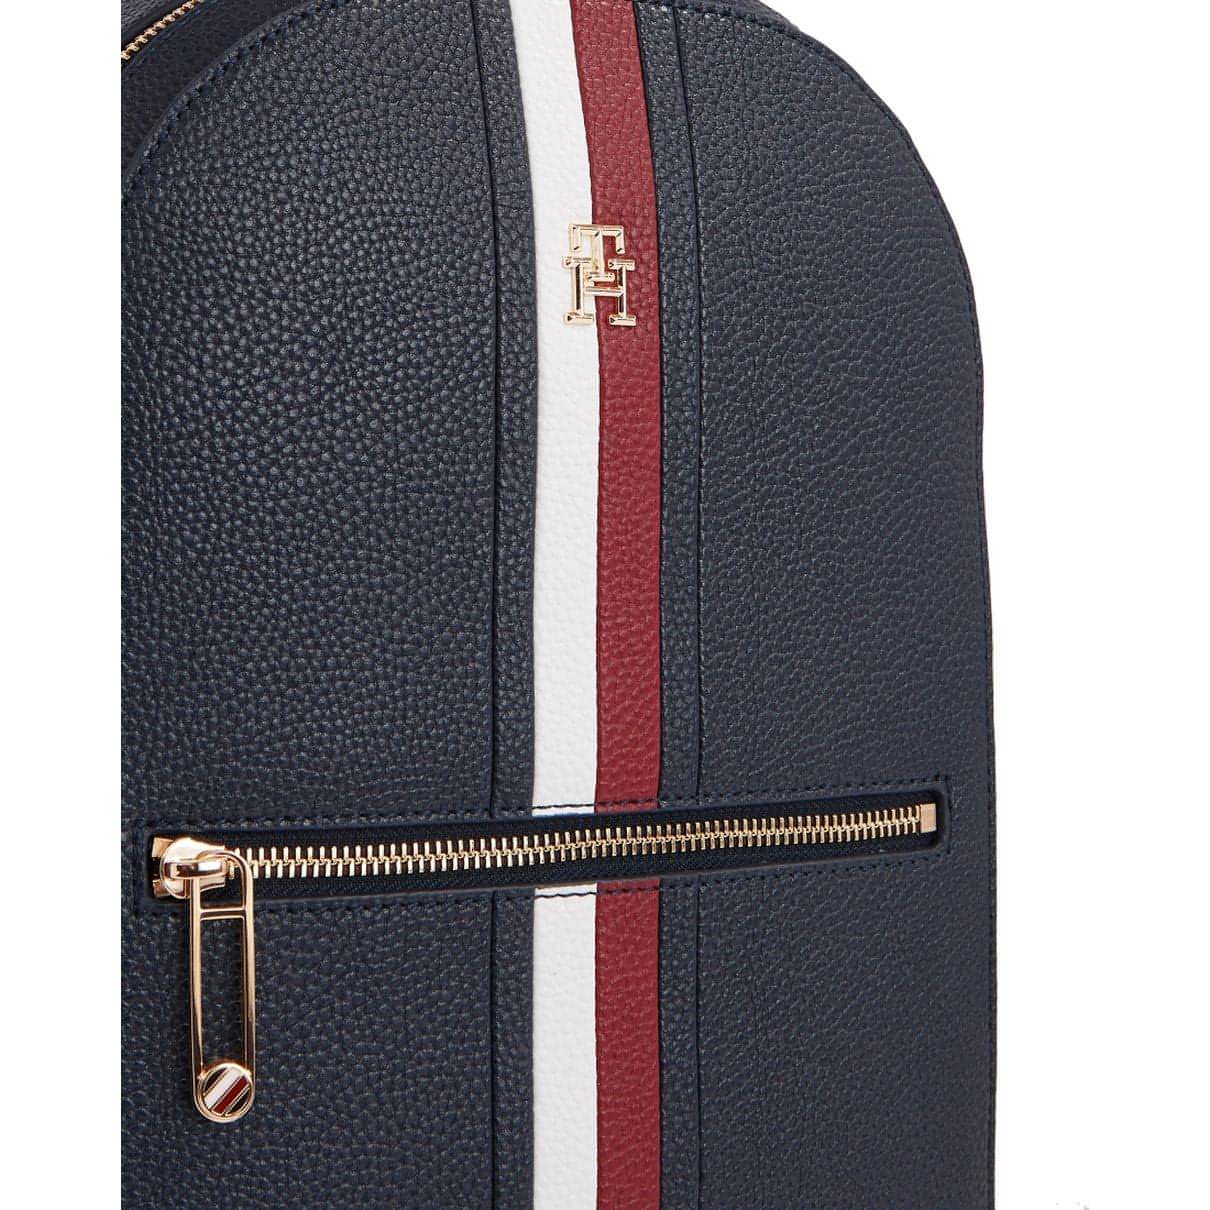 TOMMY HILFIGER moteriška mėlyna kuprinė Emblem backpack